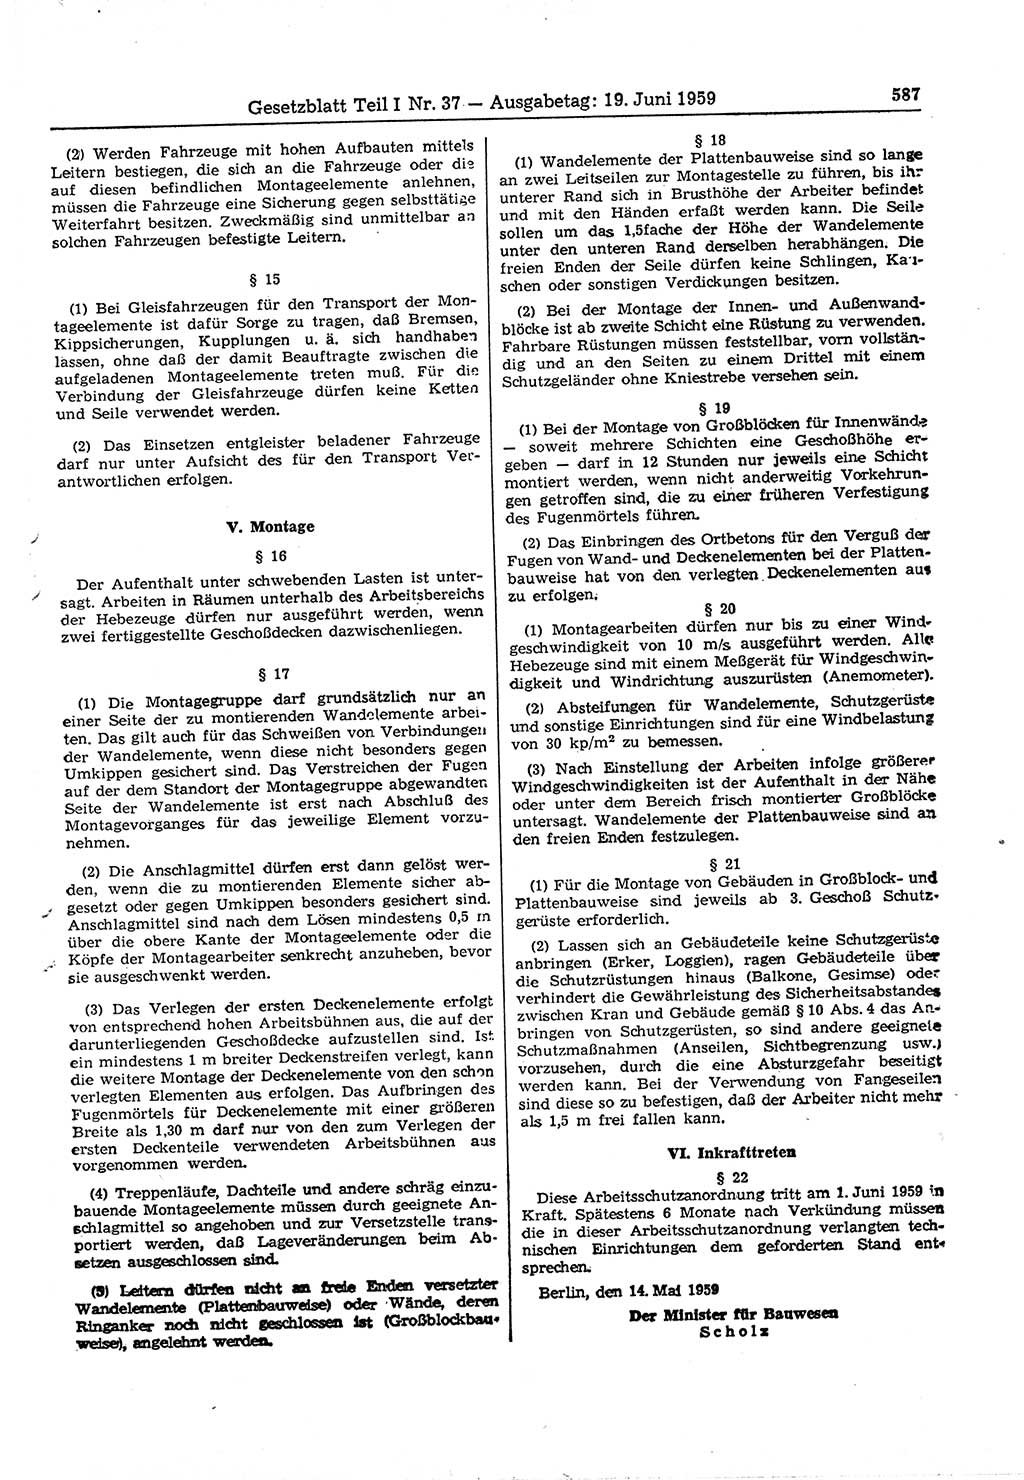 Gesetzblatt (GBl.) der Deutschen Demokratischen Republik (DDR) Teil Ⅰ 1959, Seite 587 (GBl. DDR Ⅰ 1959, S. 587)